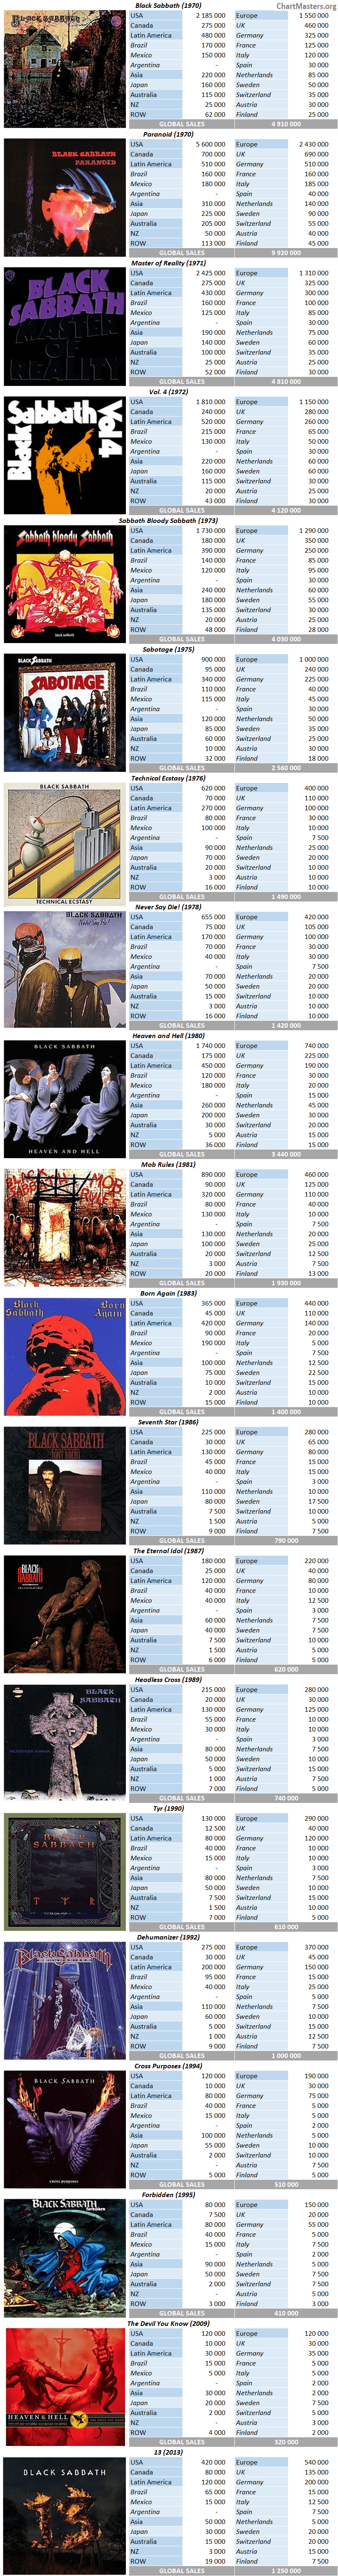 Black Sabbath album sales by market